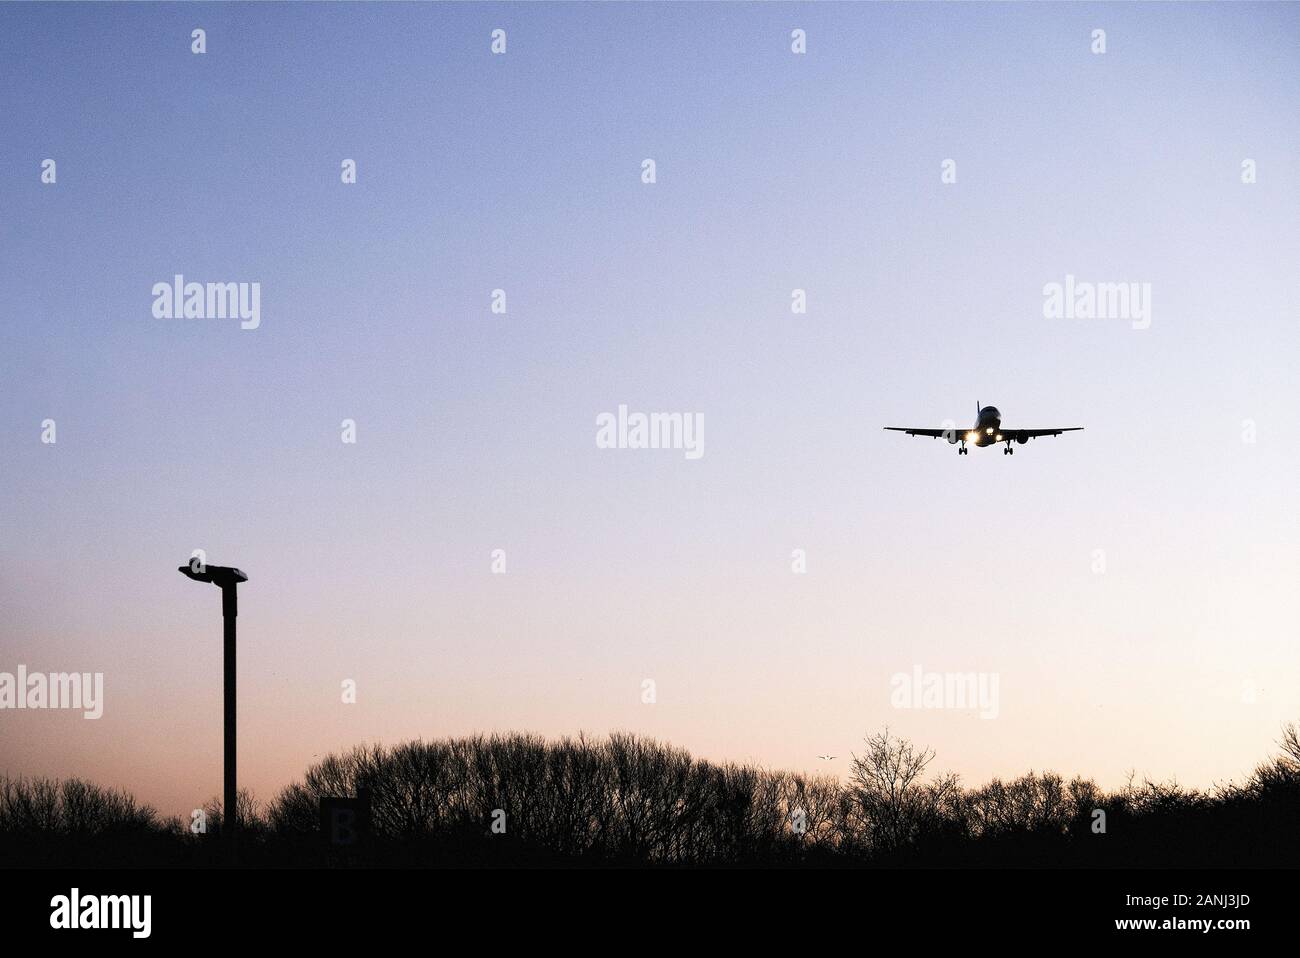 Un avion en bas vol s'est approché de l'aéroport d'Heathrow, Londres, LHR, le matin d'une direction est. Le train d'atterrissage de l'avion est abaissé. Banque D'Images